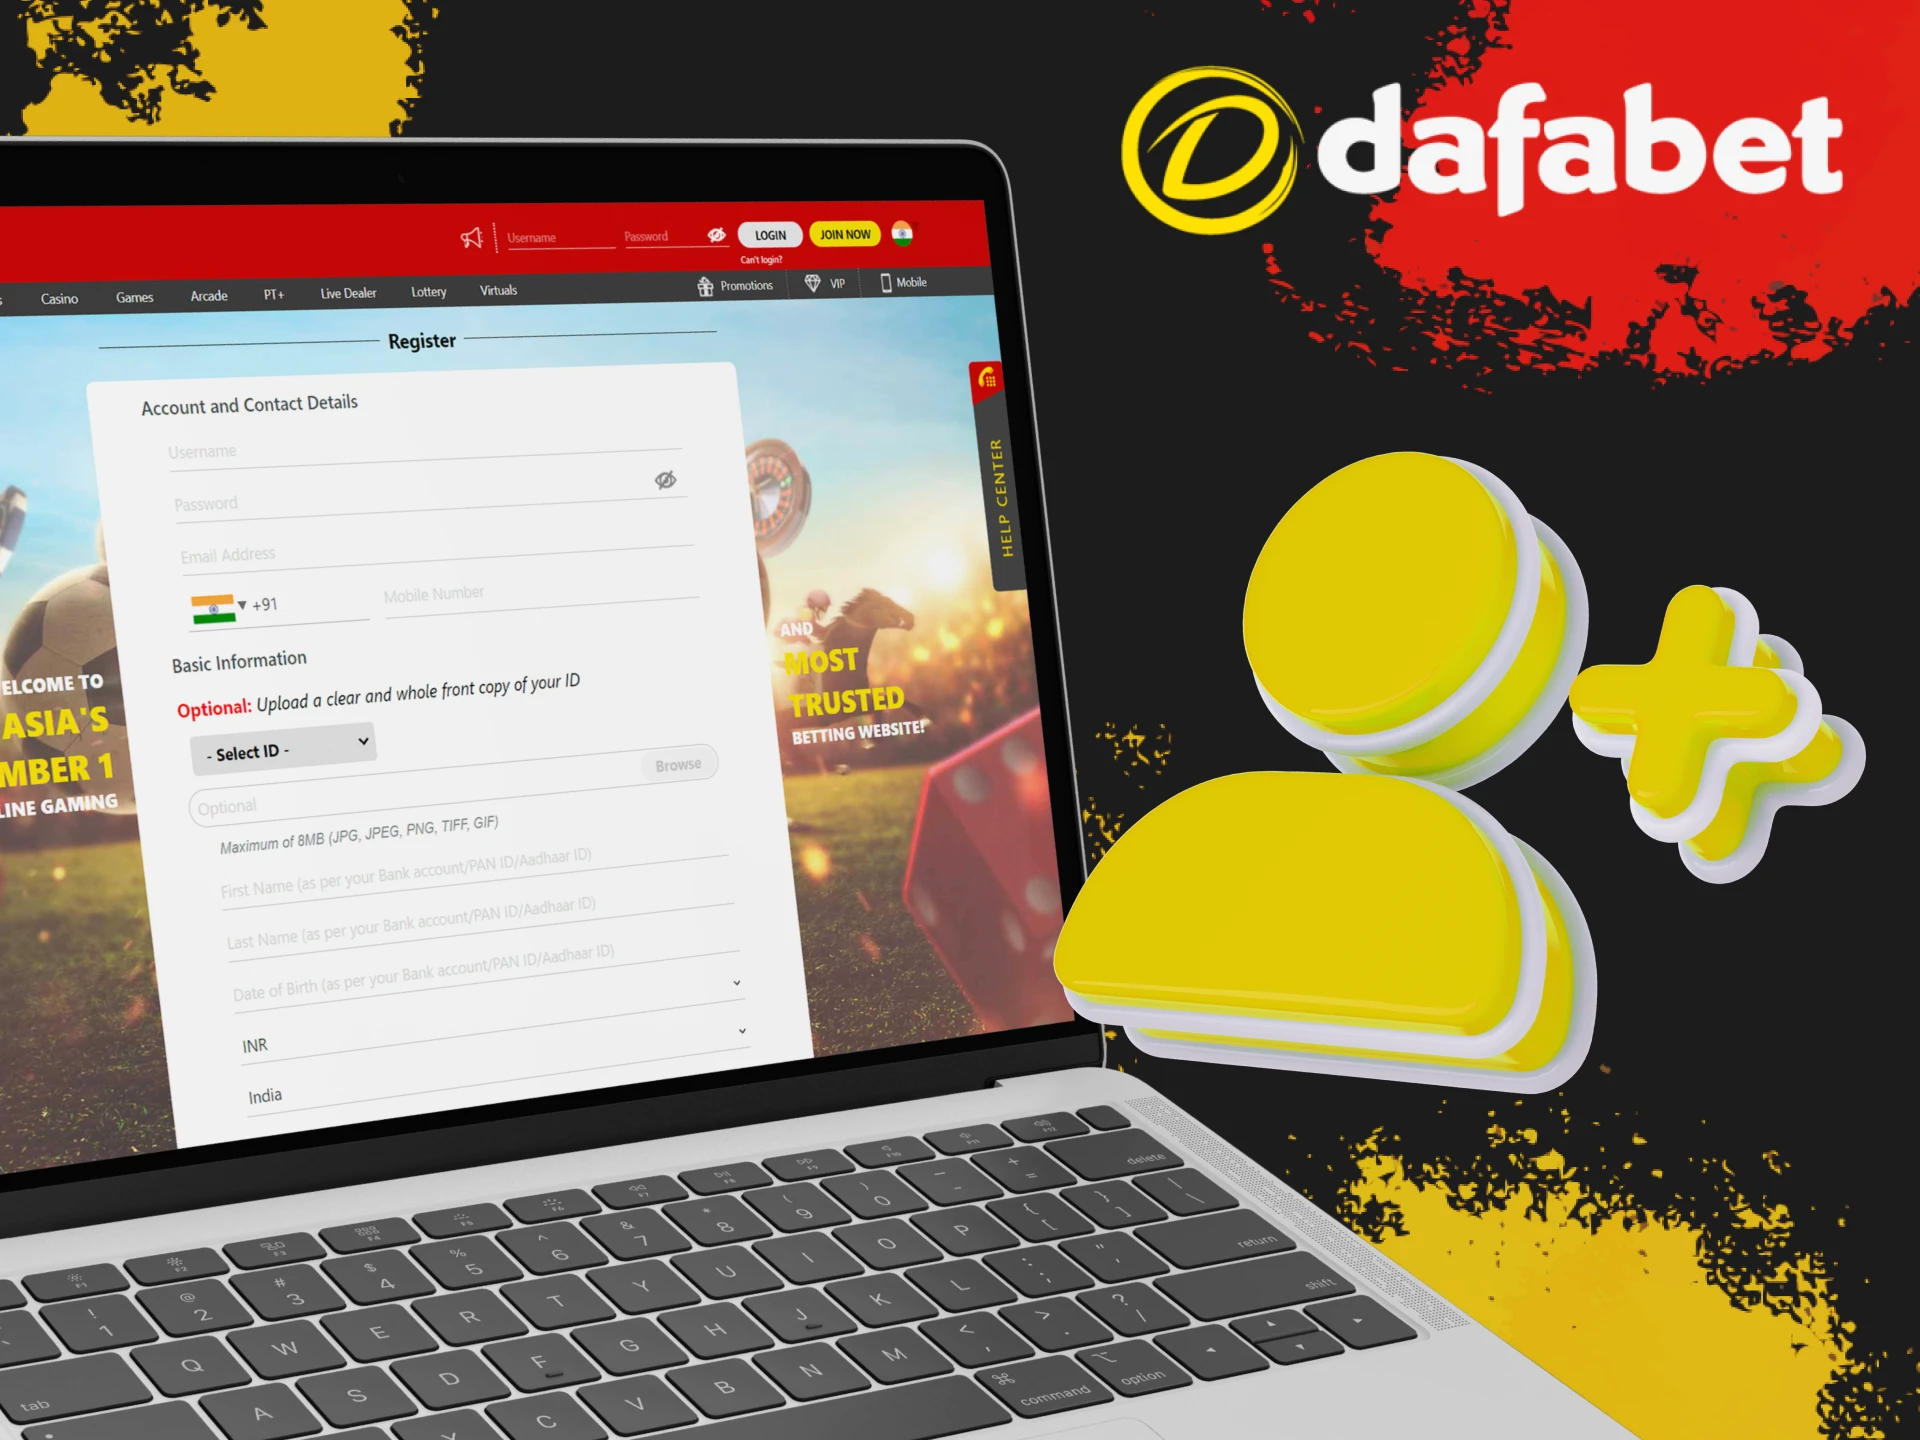 Register on the official Dafabet website.